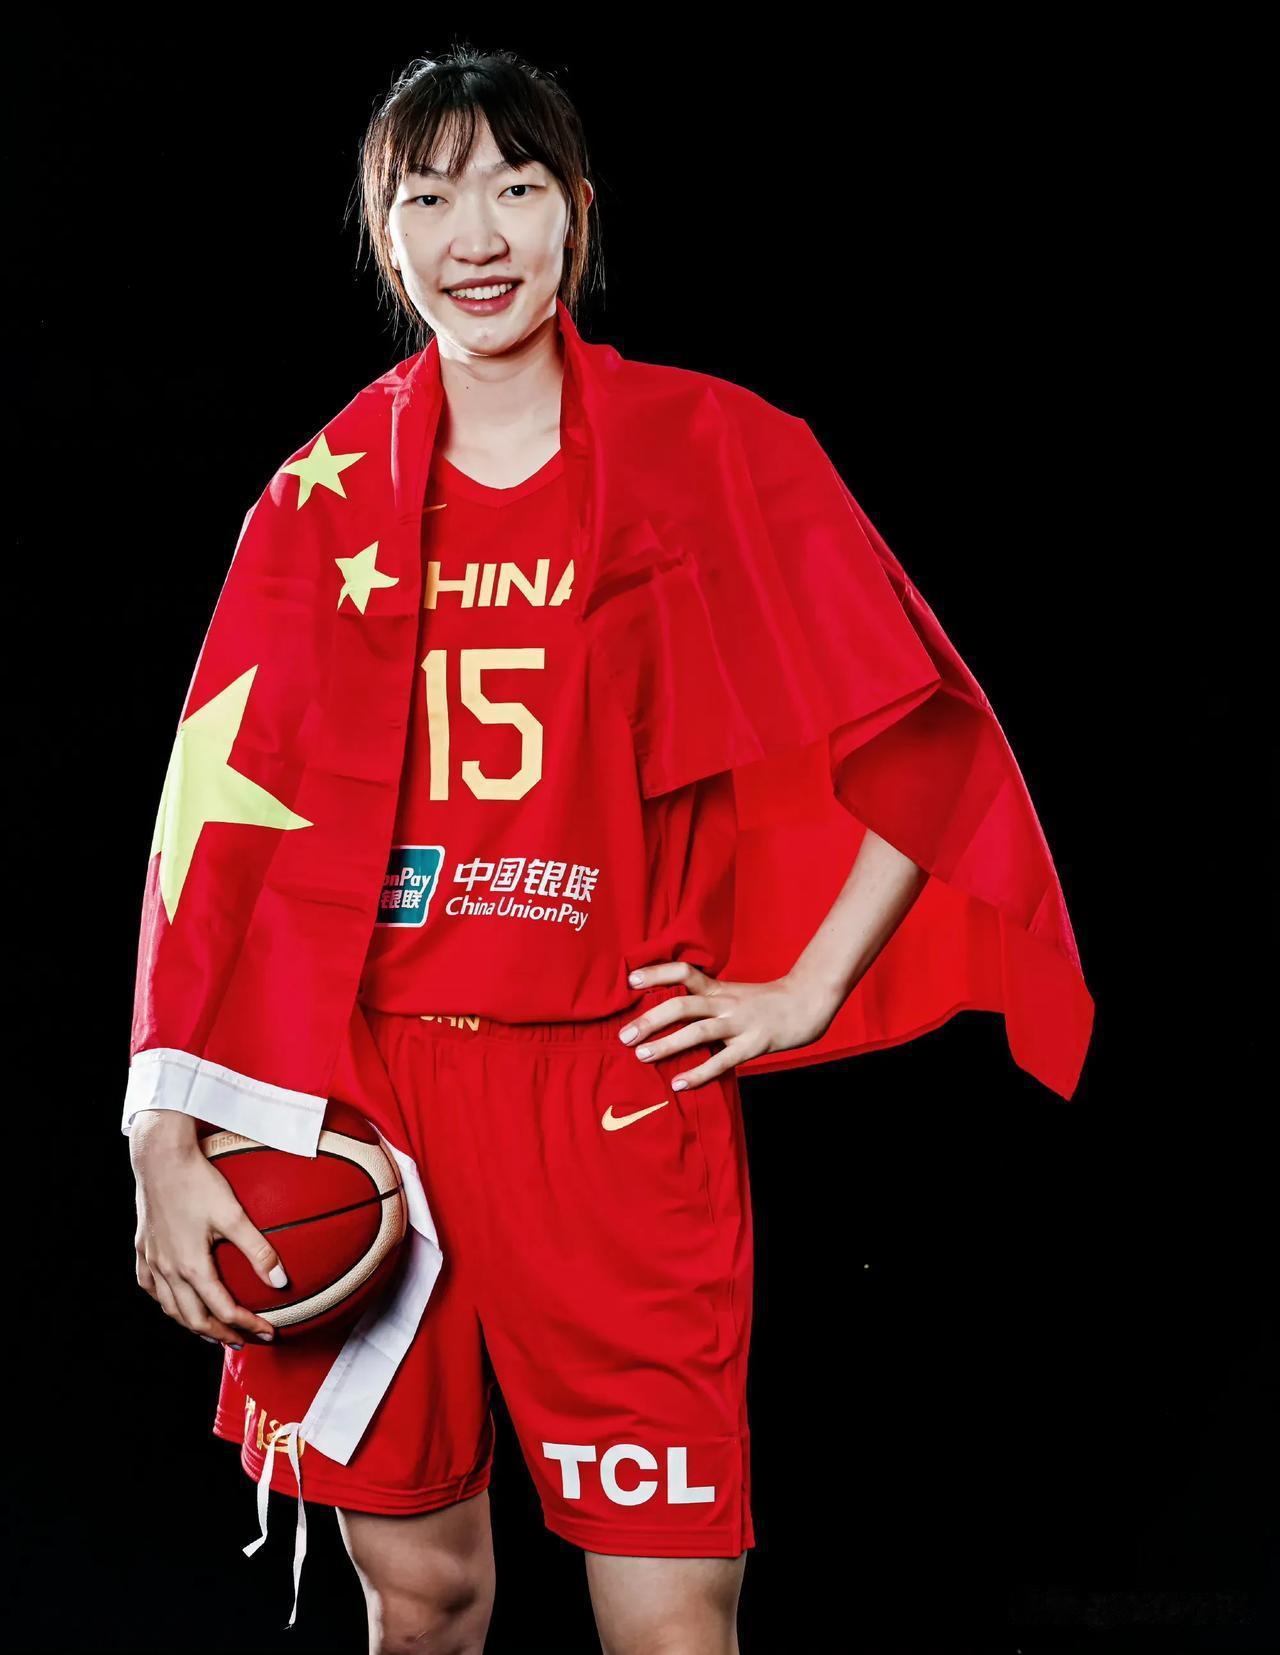 中国女篮
女篮亚洲杯倒计时1天，我心目中的预测首发阵容。
1、王思雨
2、杨力维(3)